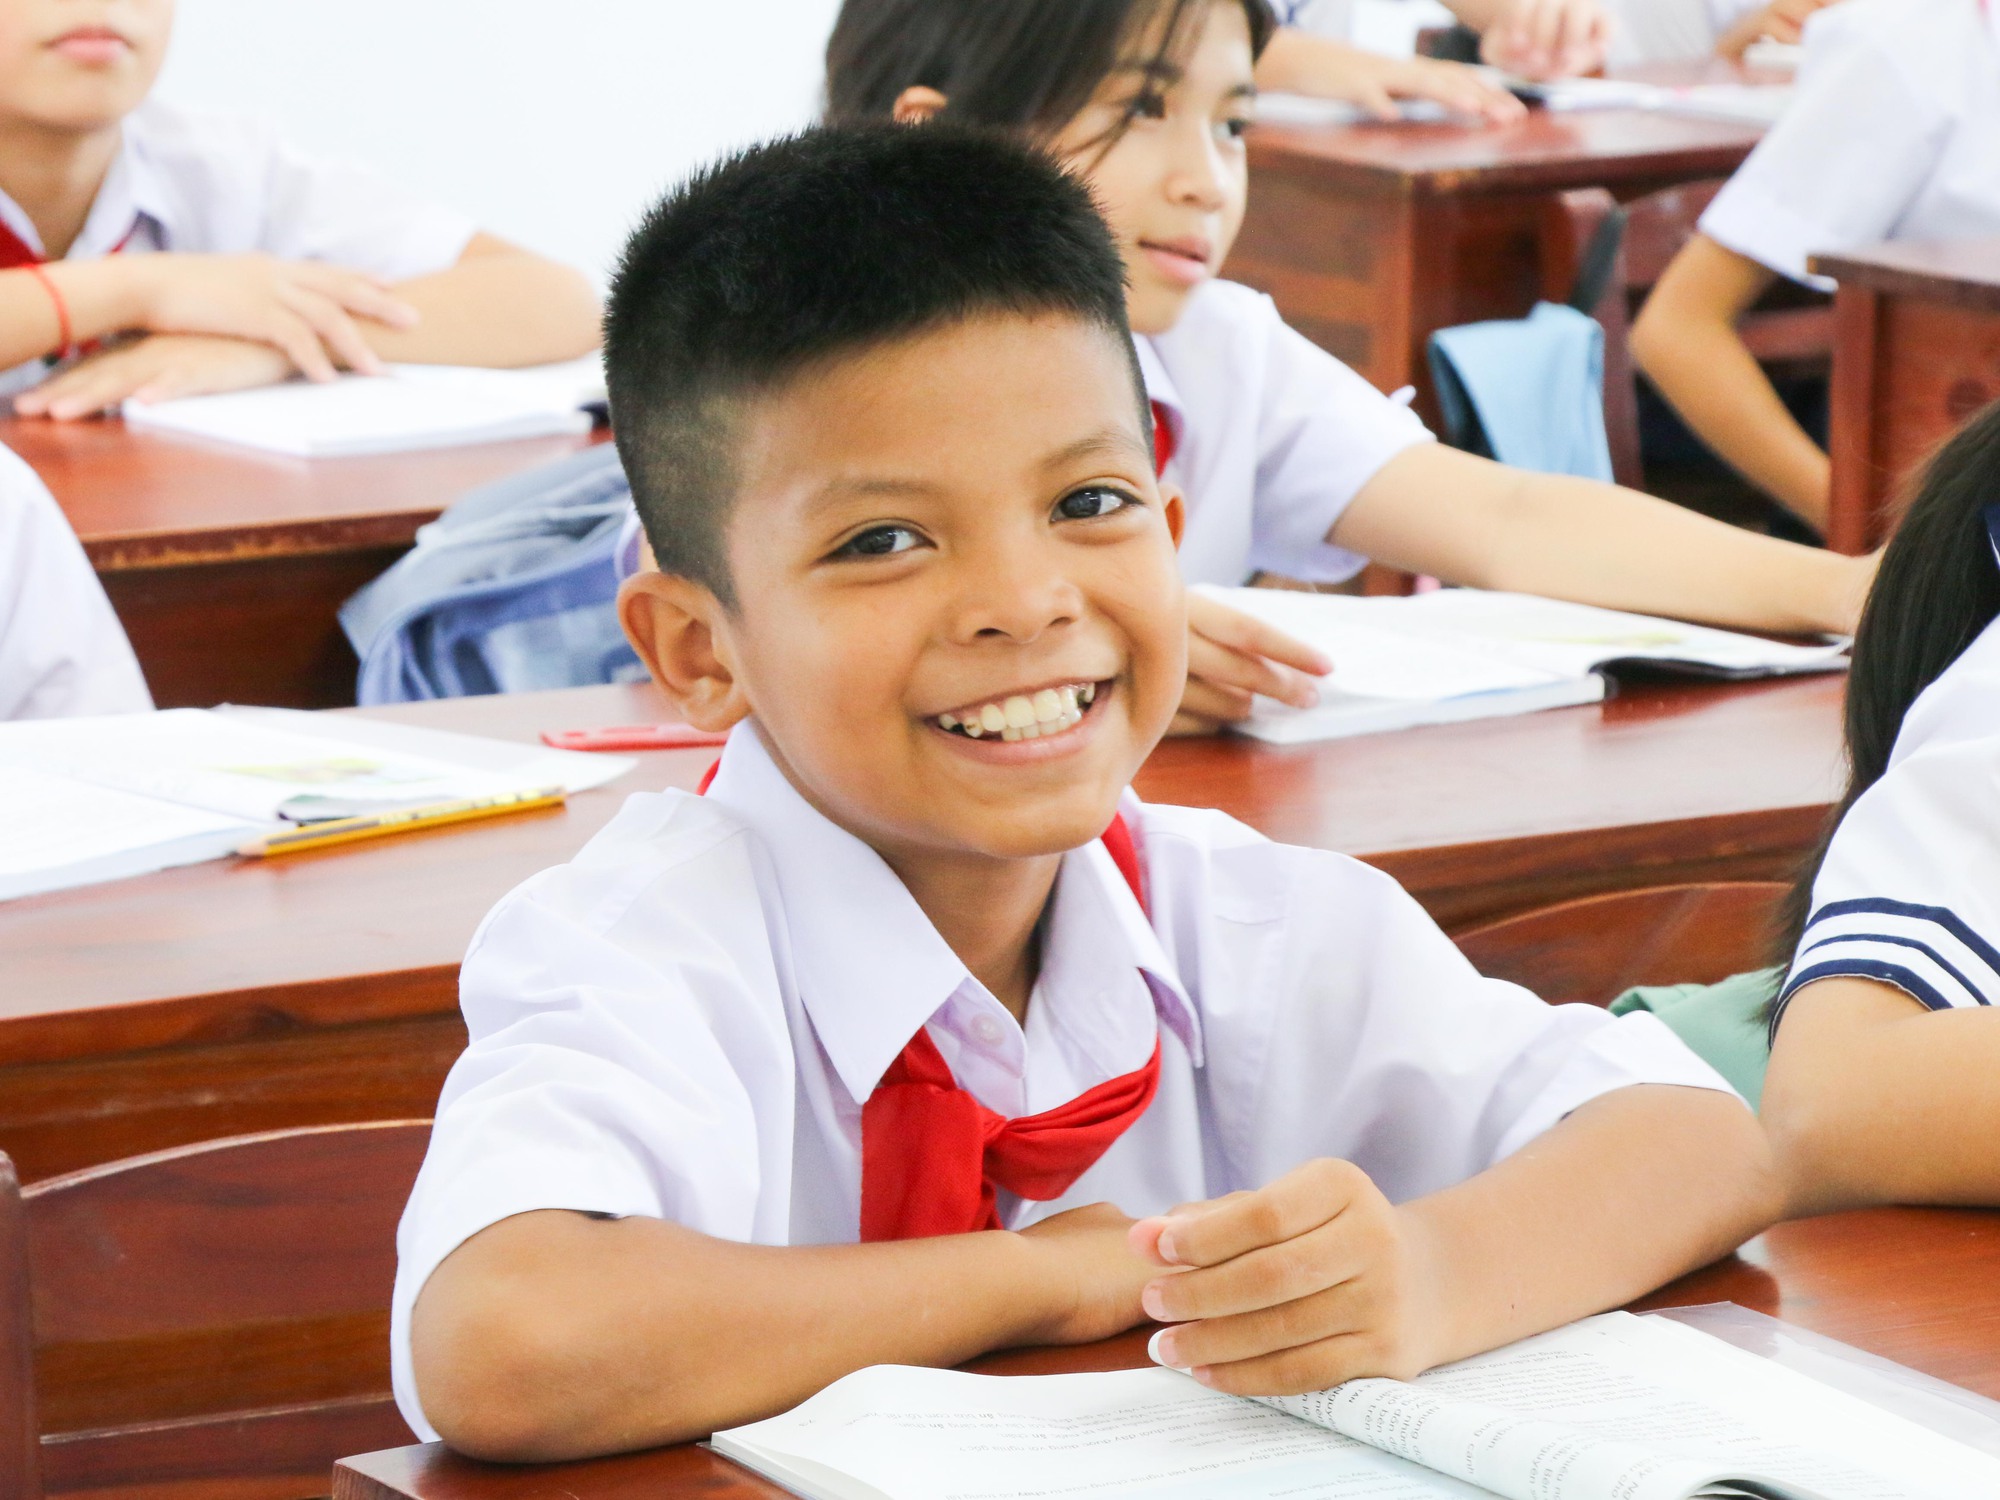 Trường học xây mới 25 tỉ: Cô giáo vỡ òa hạnh phúc khi học sinh đi học - Ảnh 6.